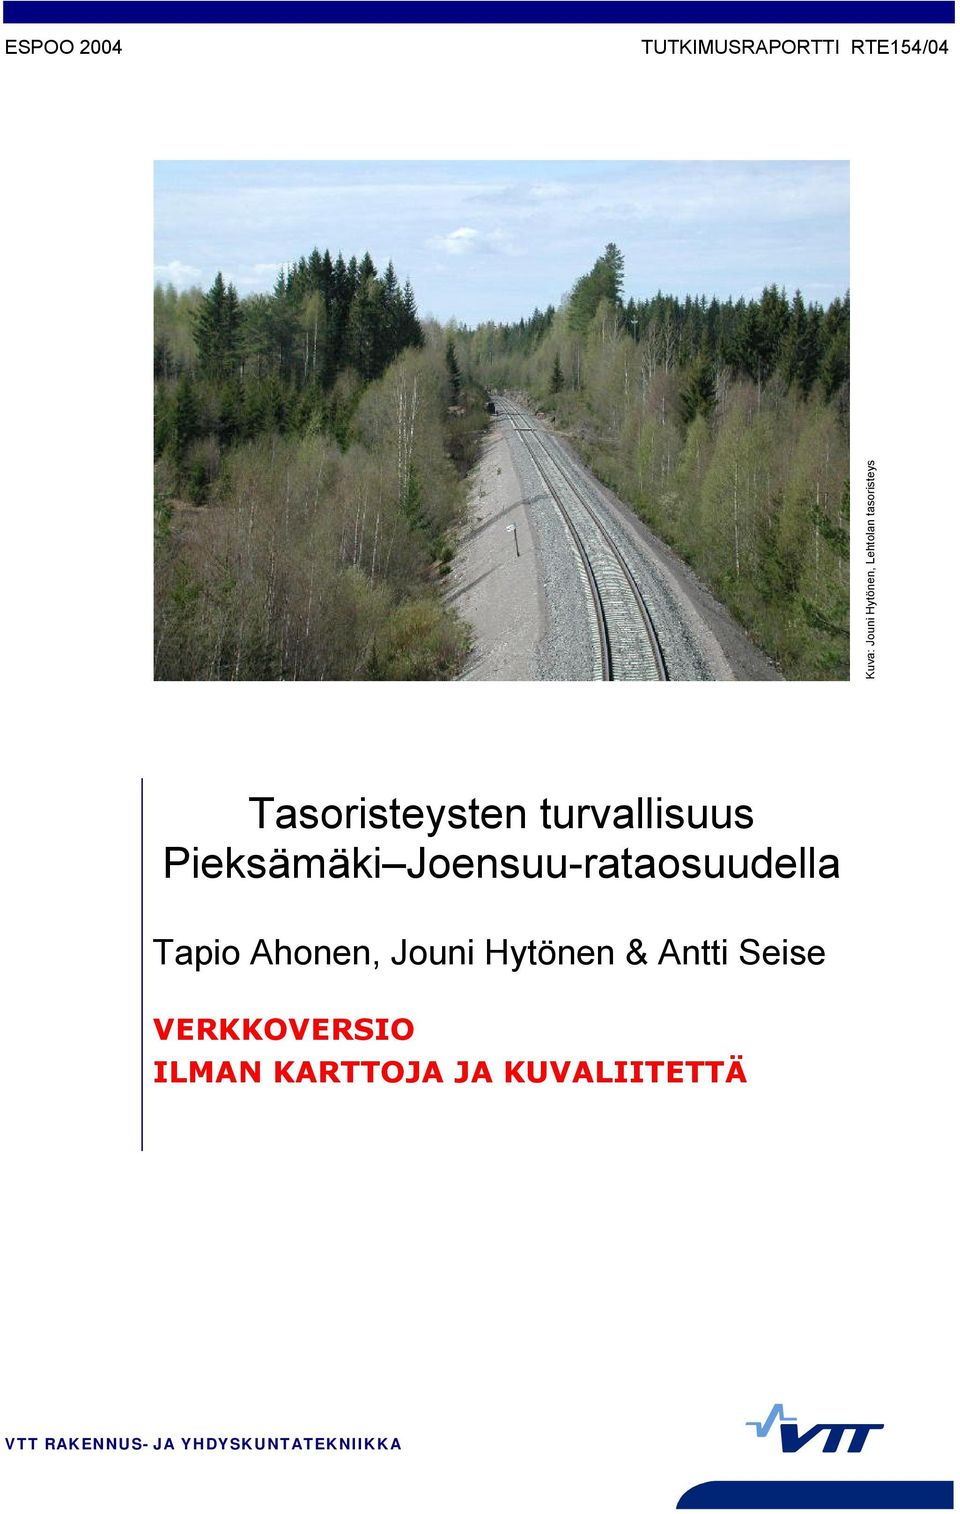 Joensuu-rataosuudella Tapio Ahonen, Jouni Hytönen & Antti Seise